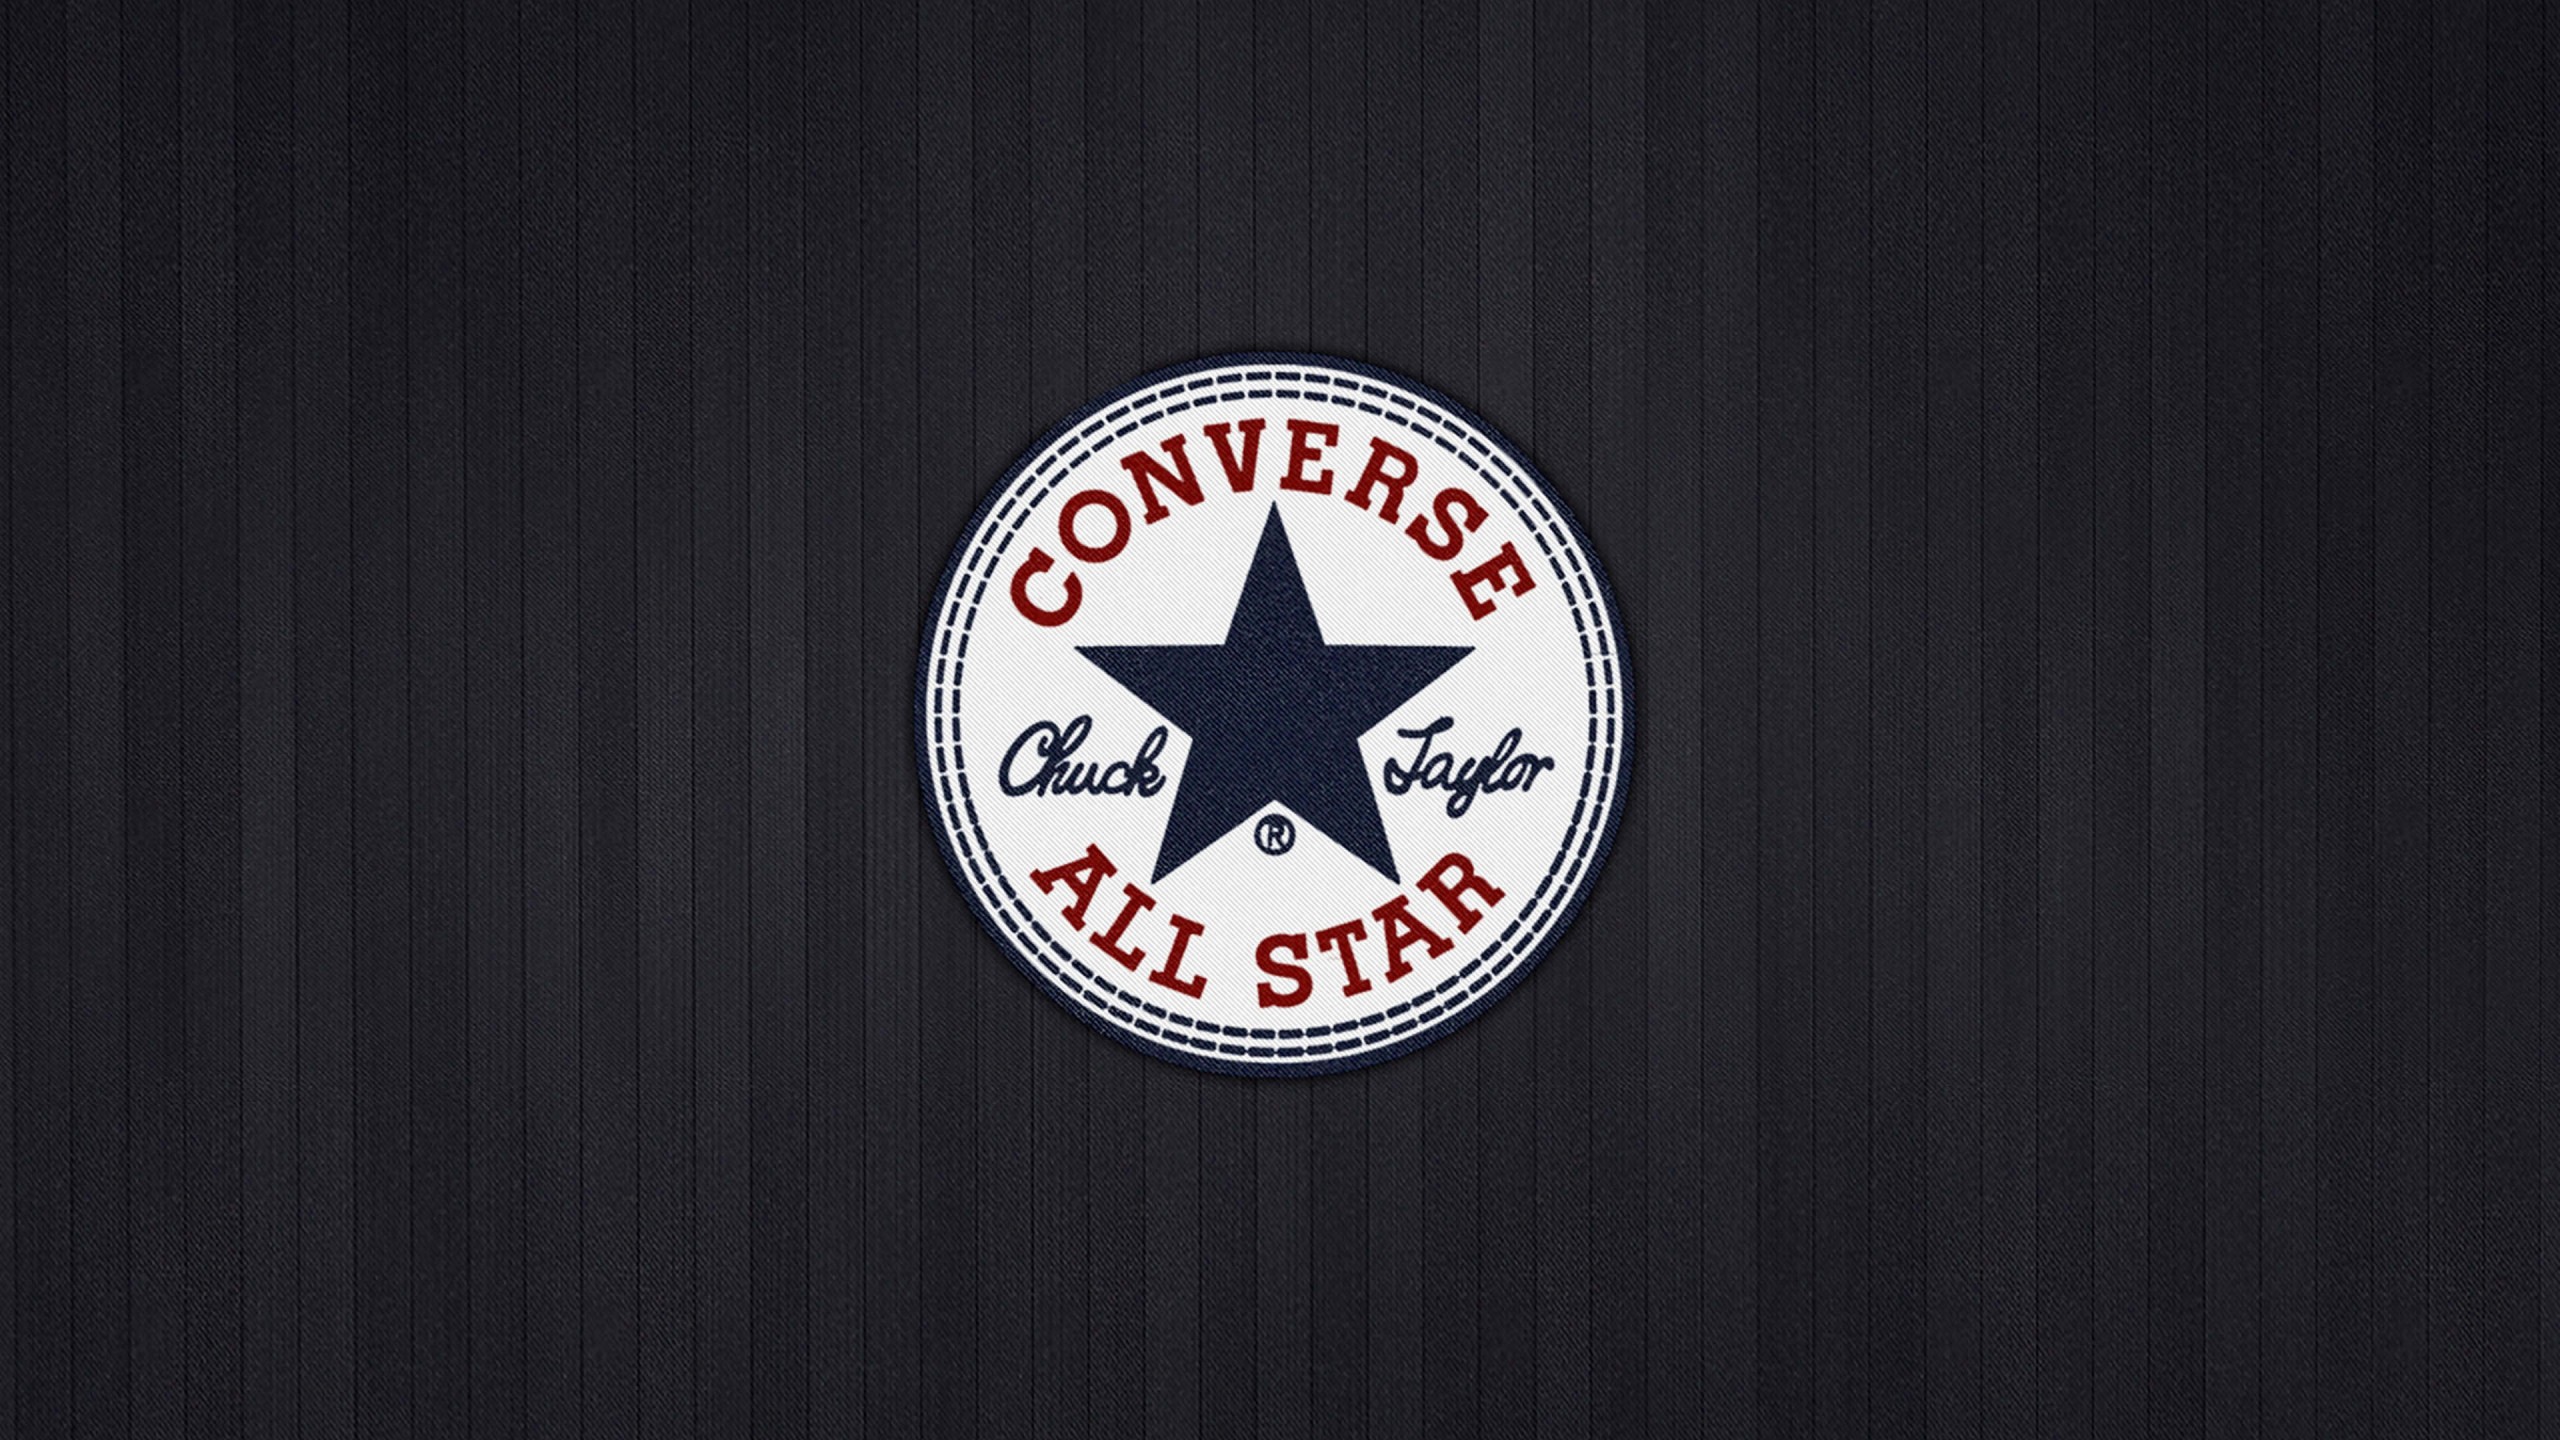 Converse All Star Wallpaper for Desktop 2560x1440